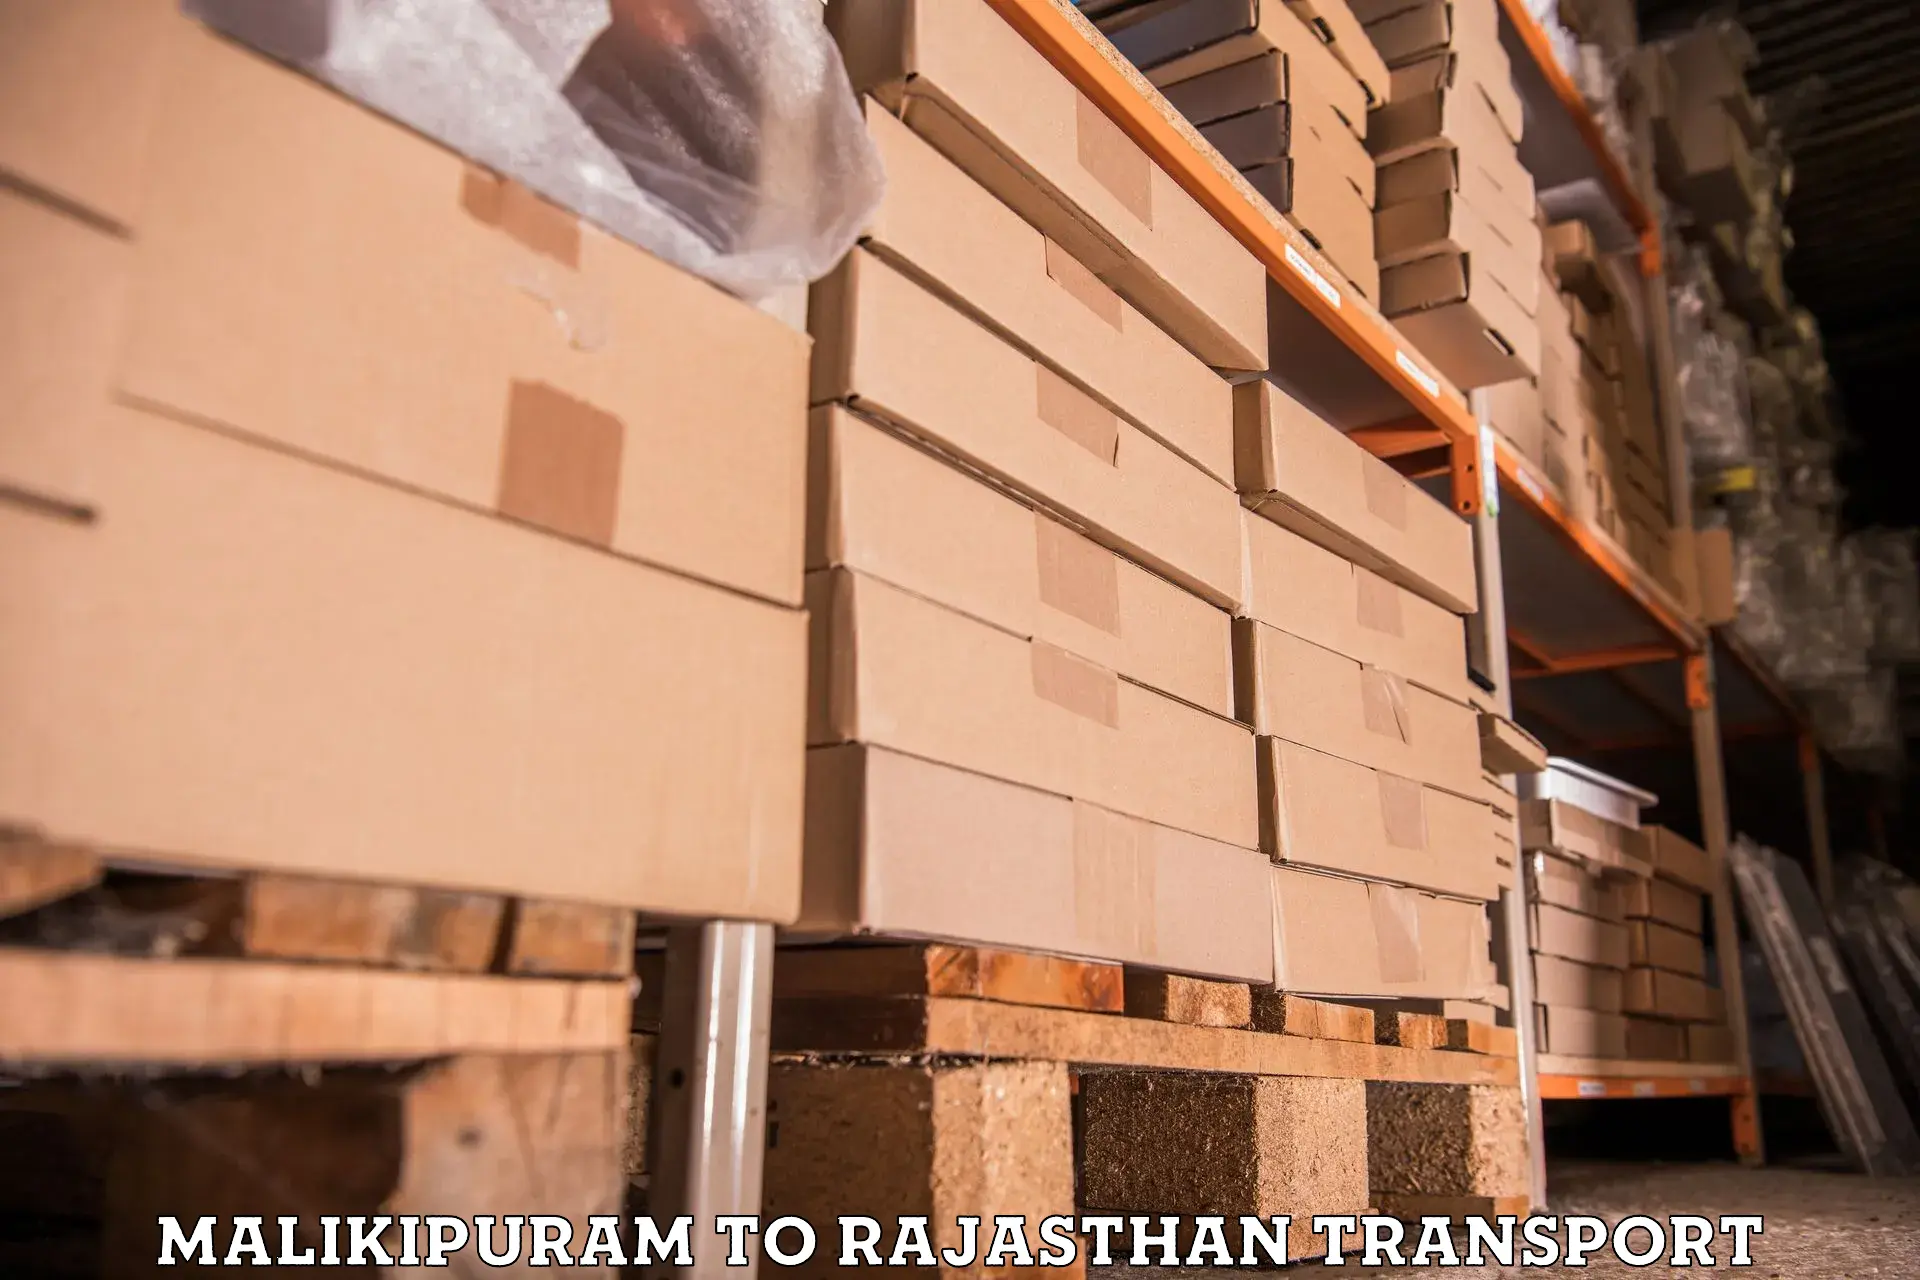 Furniture transport service Malikipuram to Chittorgarh